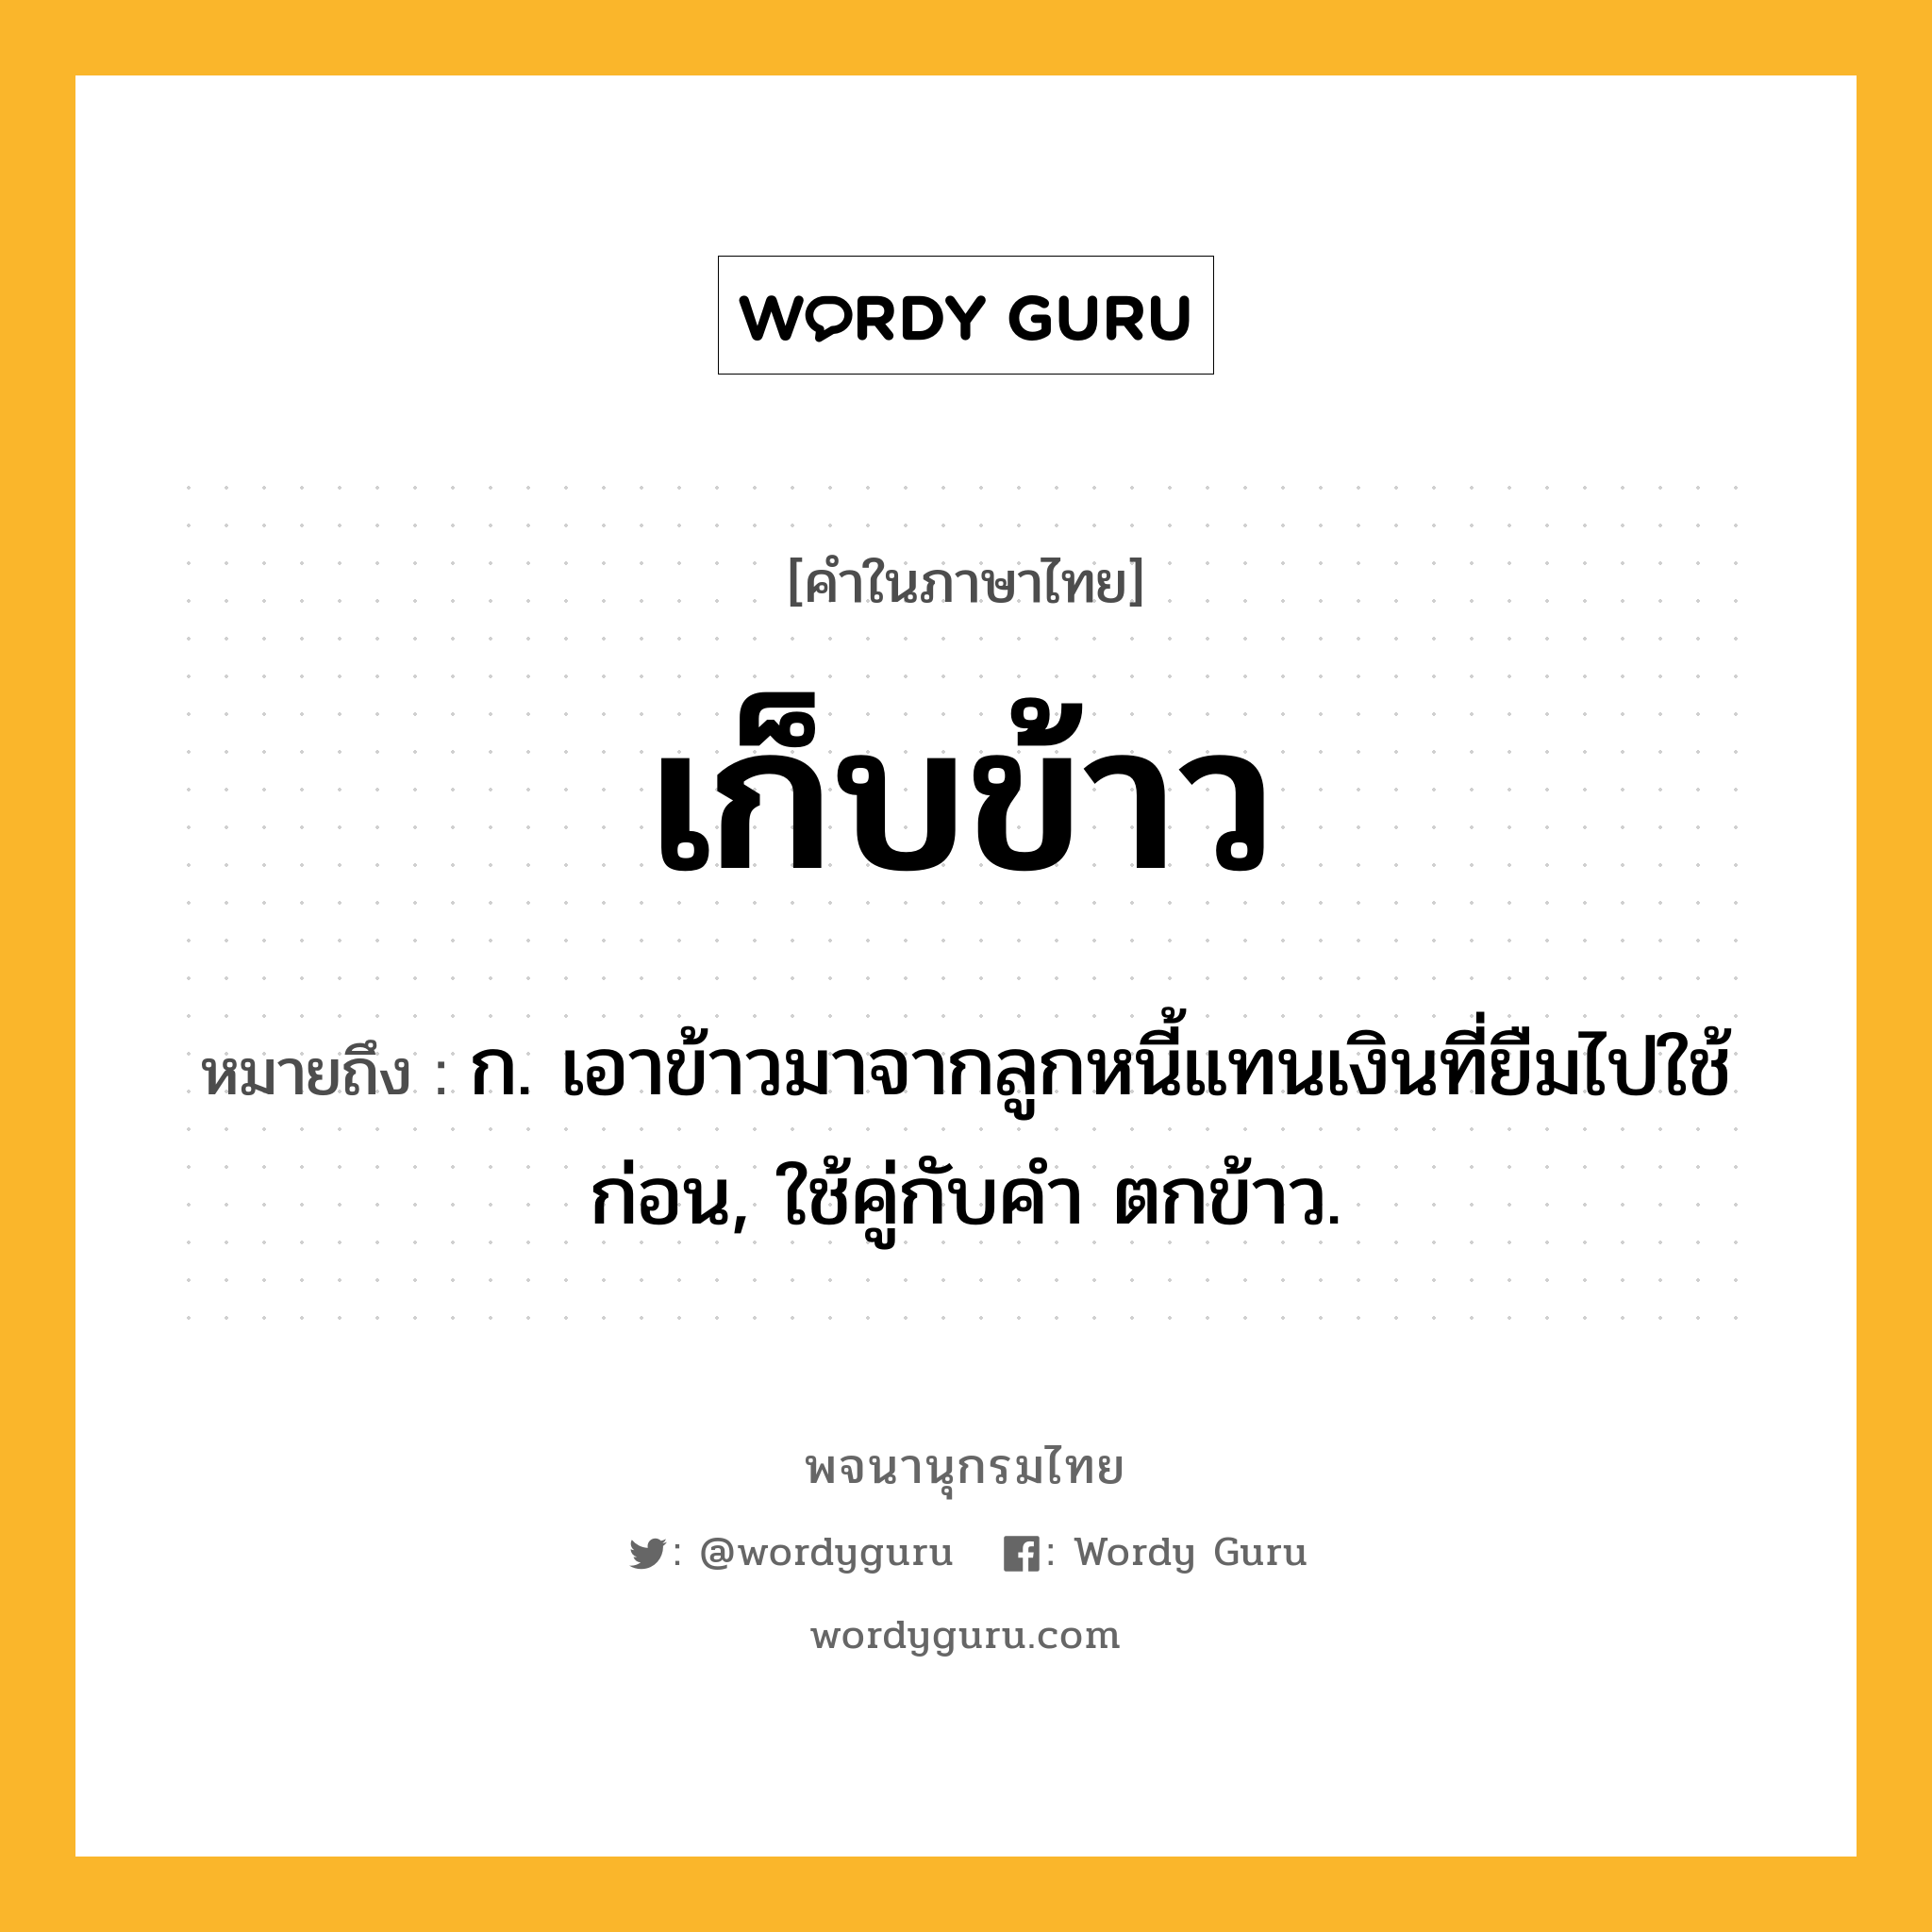 เก็บข้าว ความหมาย หมายถึงอะไร?, คำในภาษาไทย เก็บข้าว หมายถึง ก. เอาข้าวมาจากลูกหนี้แทนเงินที่ยืมไปใช้ก่อน, ใช้คู่กับคำ ตกข้าว.